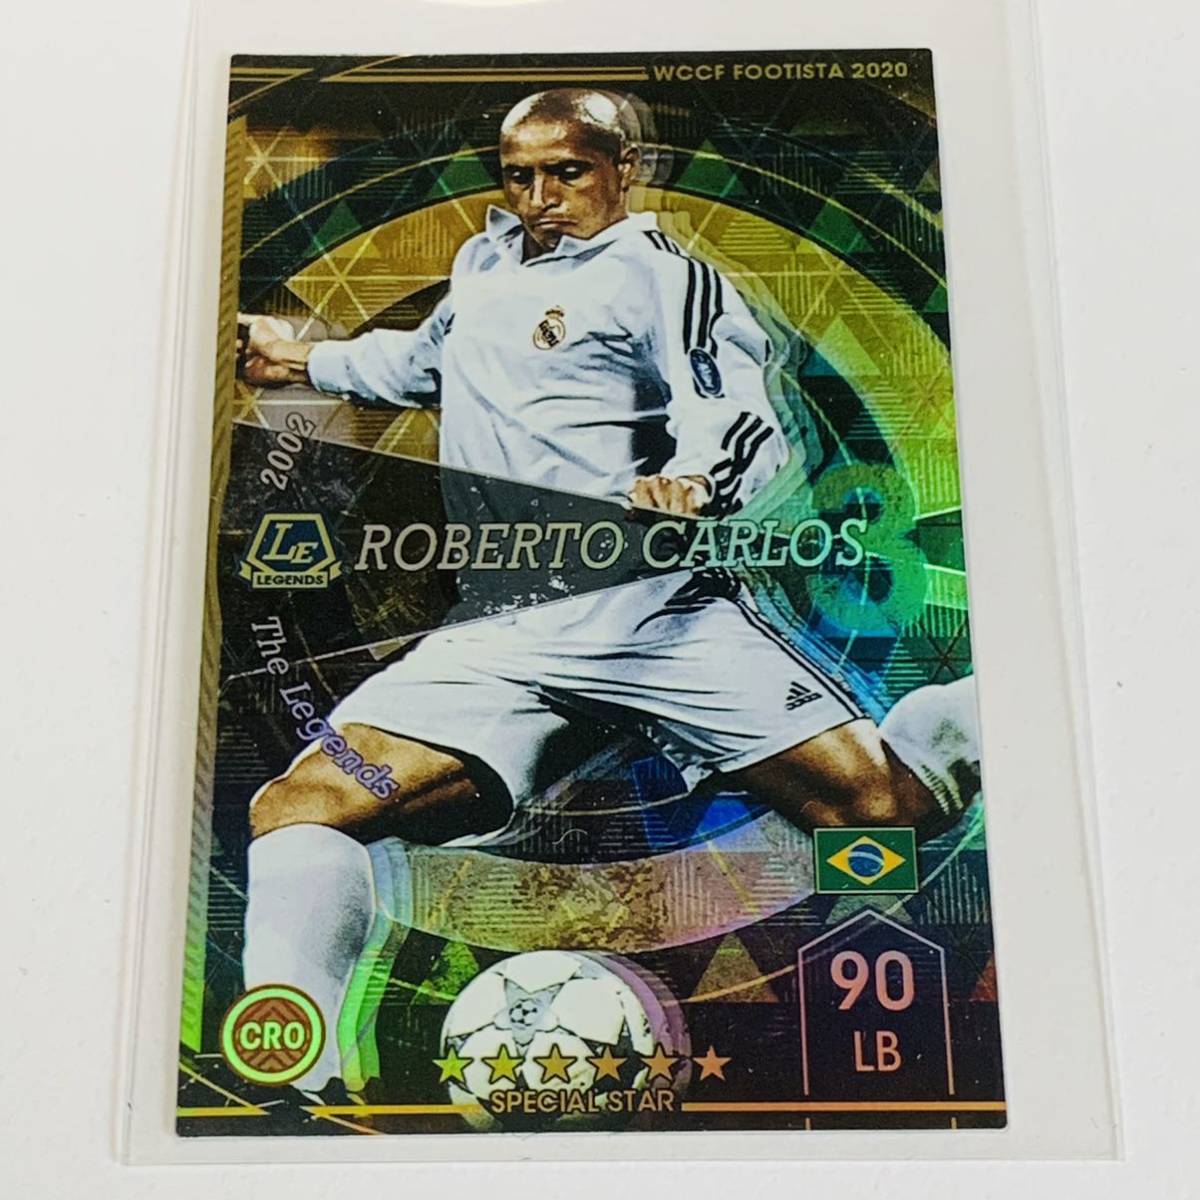 期間限定特価品 Wccf Footista 3 Le ロベルト カルロス Robert Carlos Real Madrid ランク